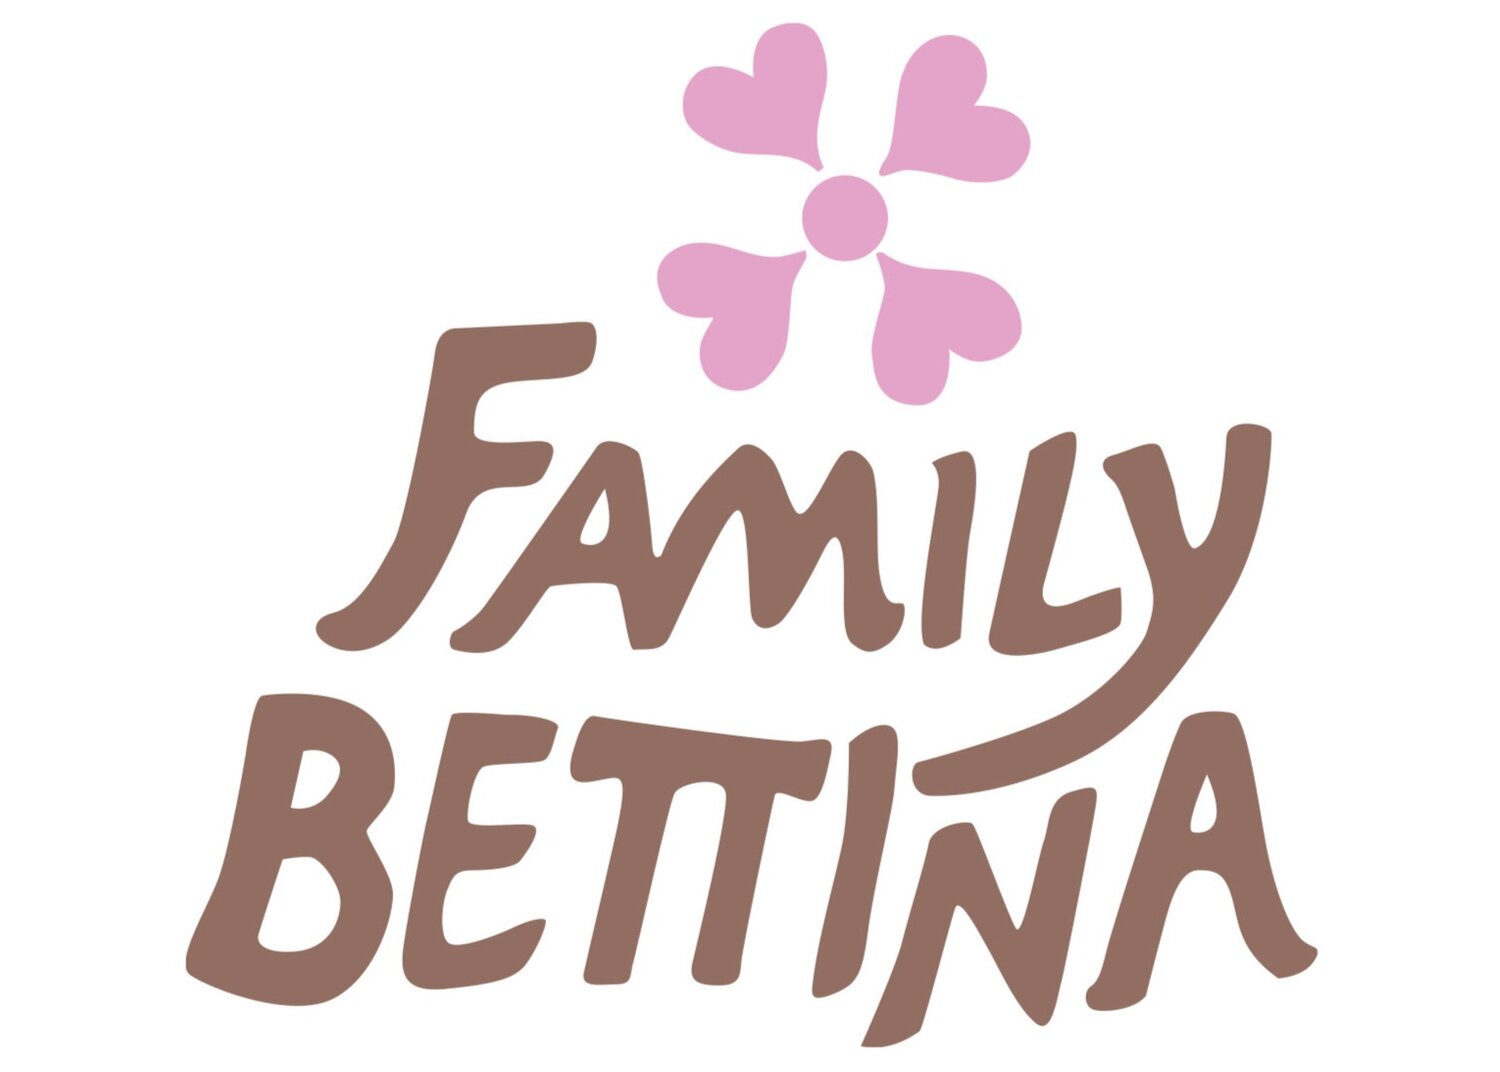 Family Bettina